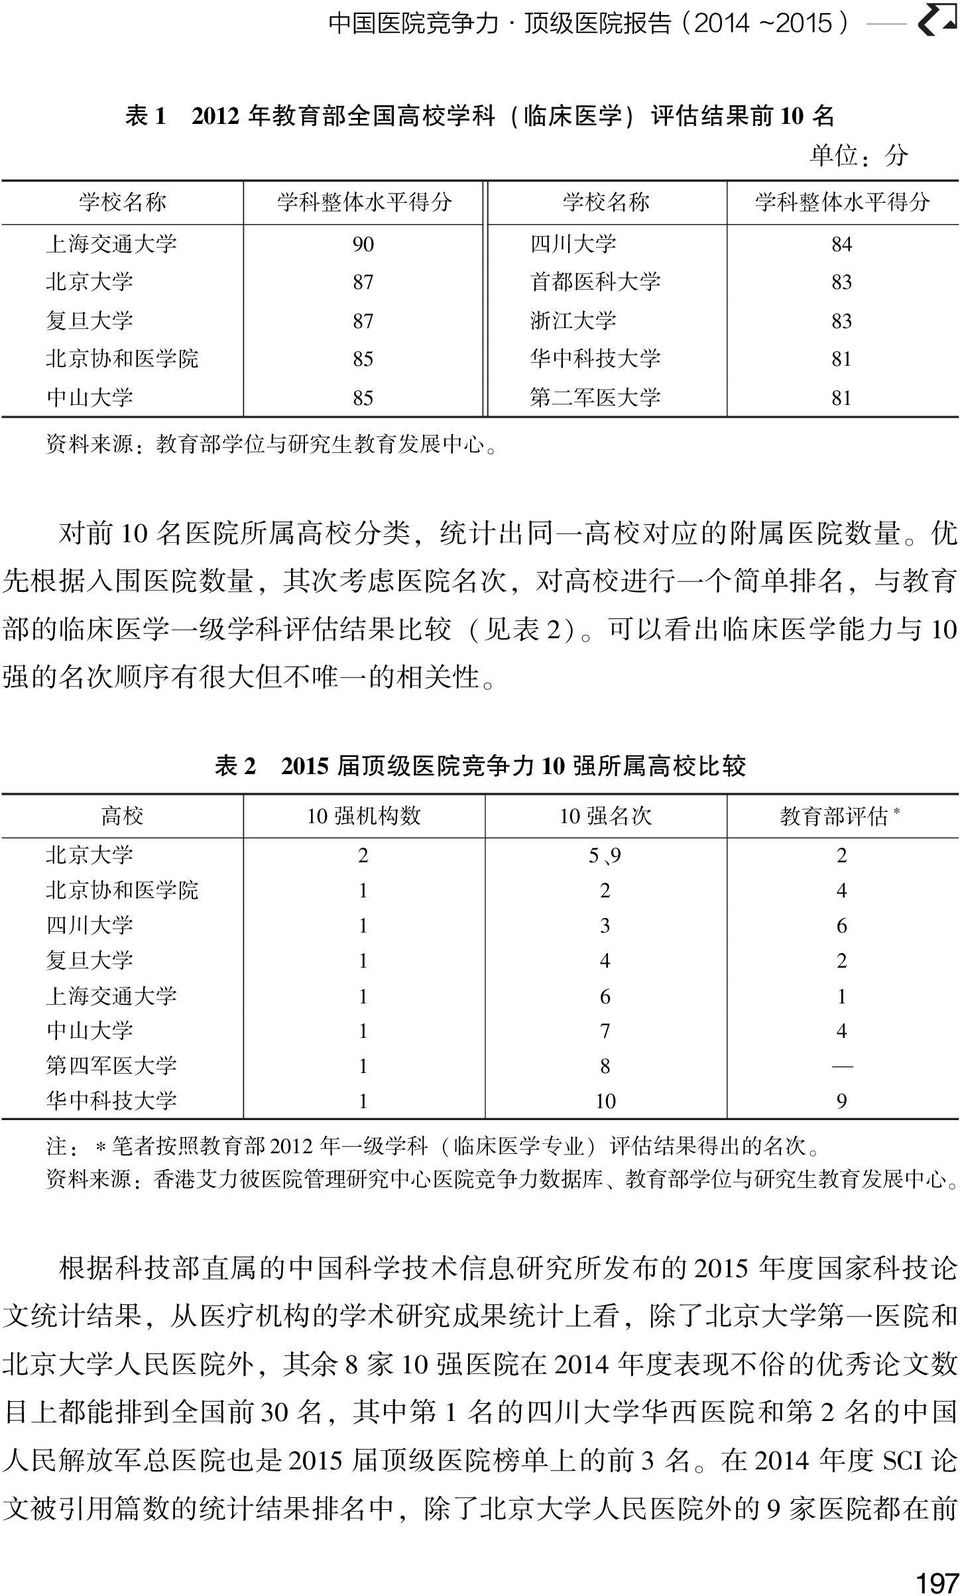 名, 与 教 育 部 的 临 床 医 学 一 级 学 科 评 估 结 果 比 较 ( 见 表 2) 可 以 看 出 临 床 医 学 能 力 与 10 强 的 名 次 顺 序 有 很 大 但 不 唯 一 的 相 关 性 表 2 2015 届 顶 级 医 院 竞 争 力 10 强 所 属 高 校 比 较 高 校 10 强 机 构 数 10 强 名 次 教 育 部 评 估 北 京 大 学 2 5 9